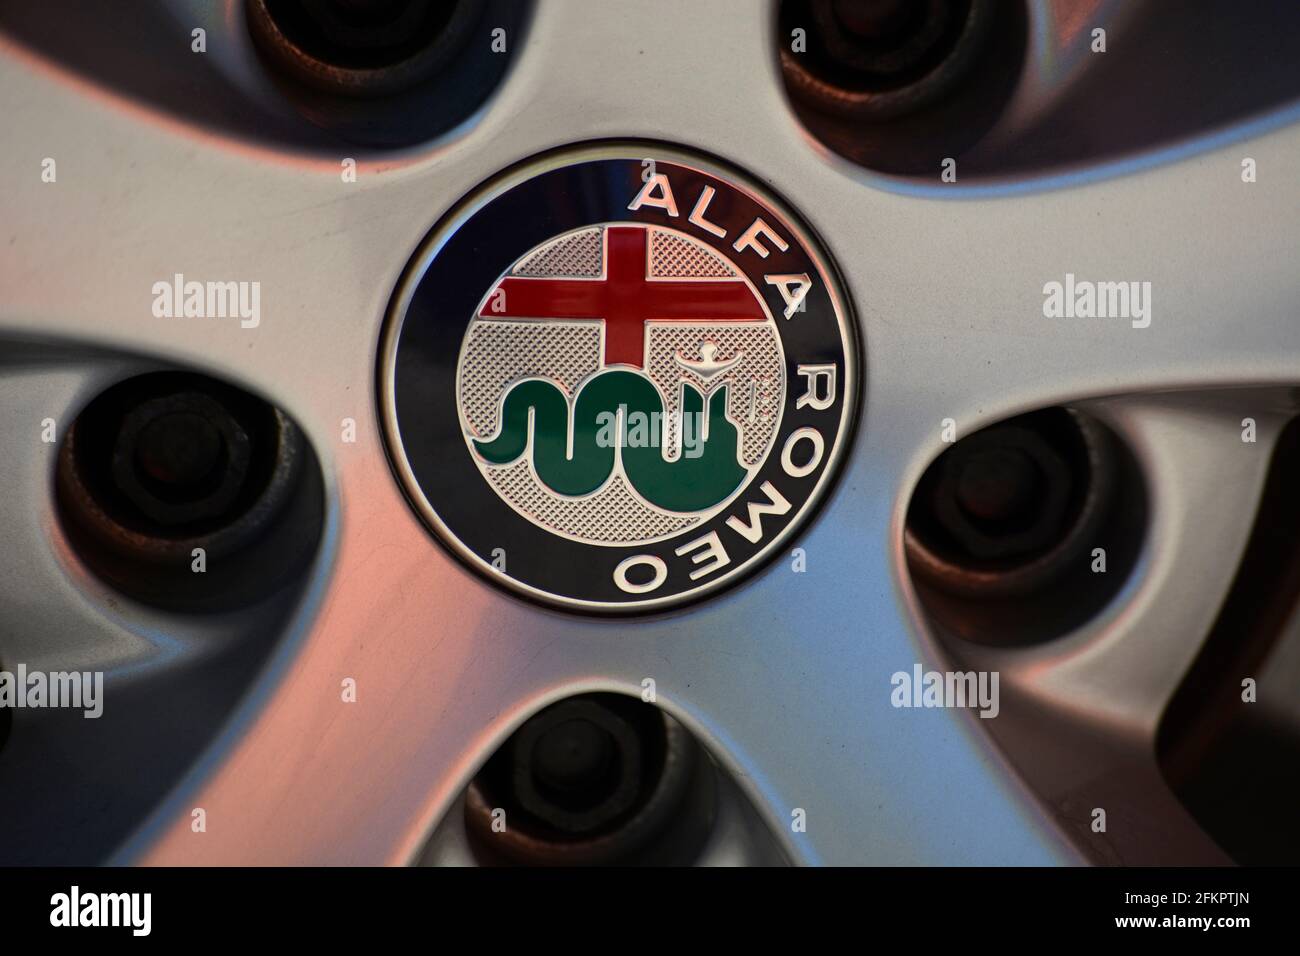 The Alfa Romeo logo on the wheel cover of an Alfa Romeo SUV in Santa Fe,  New Mexico Stock Photo - Alamy